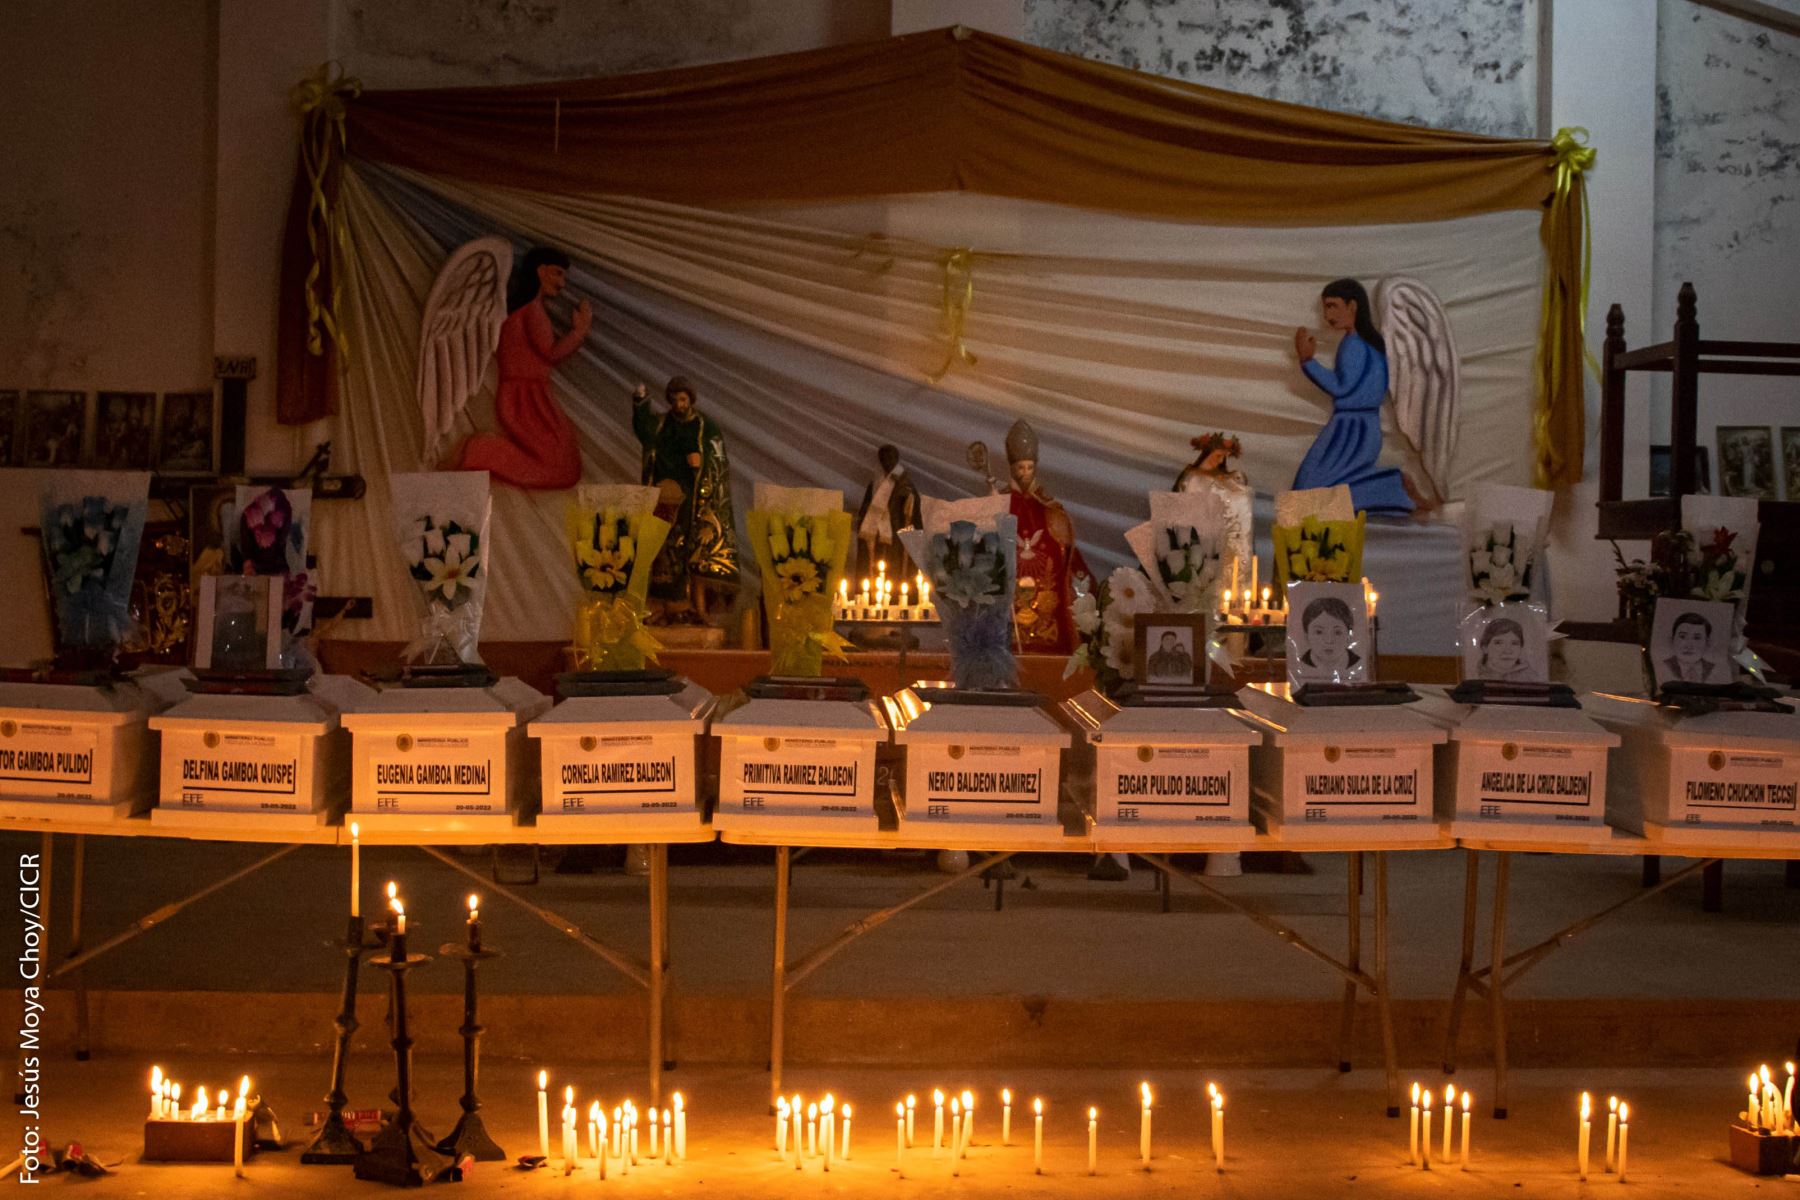 La entrega de los restos de las víctimas de Accomarca se inició el martes. Foto: ANDINA/difusión.